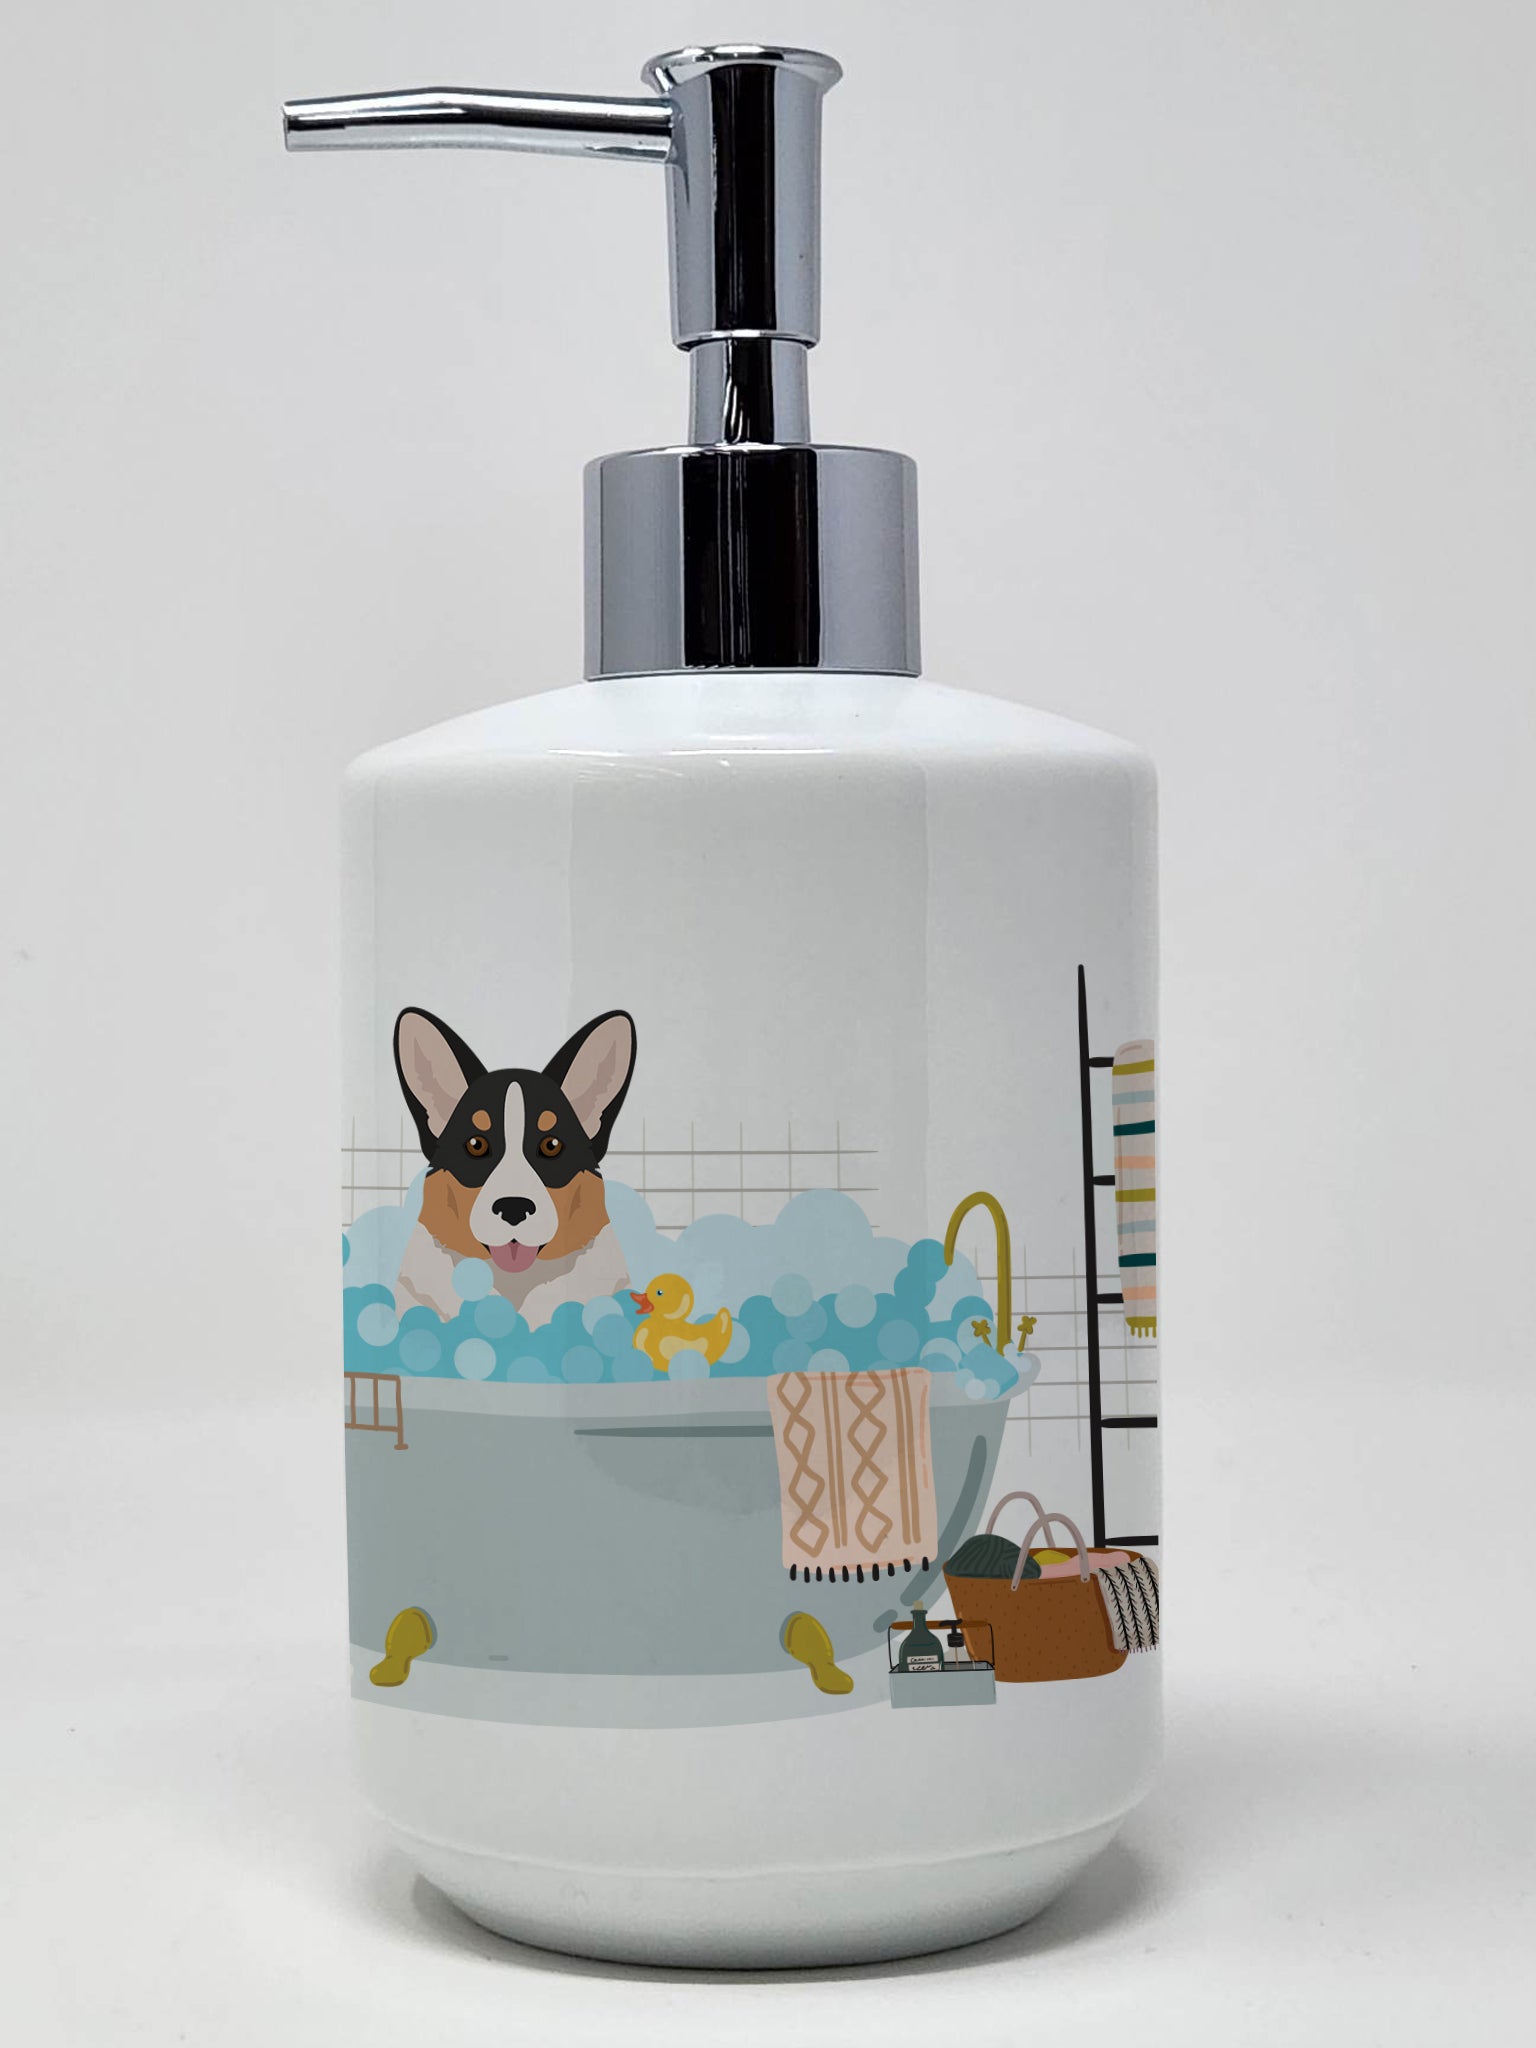 Buy this Tricolor Cardigan Corgi Ceramic Soap Dispenser